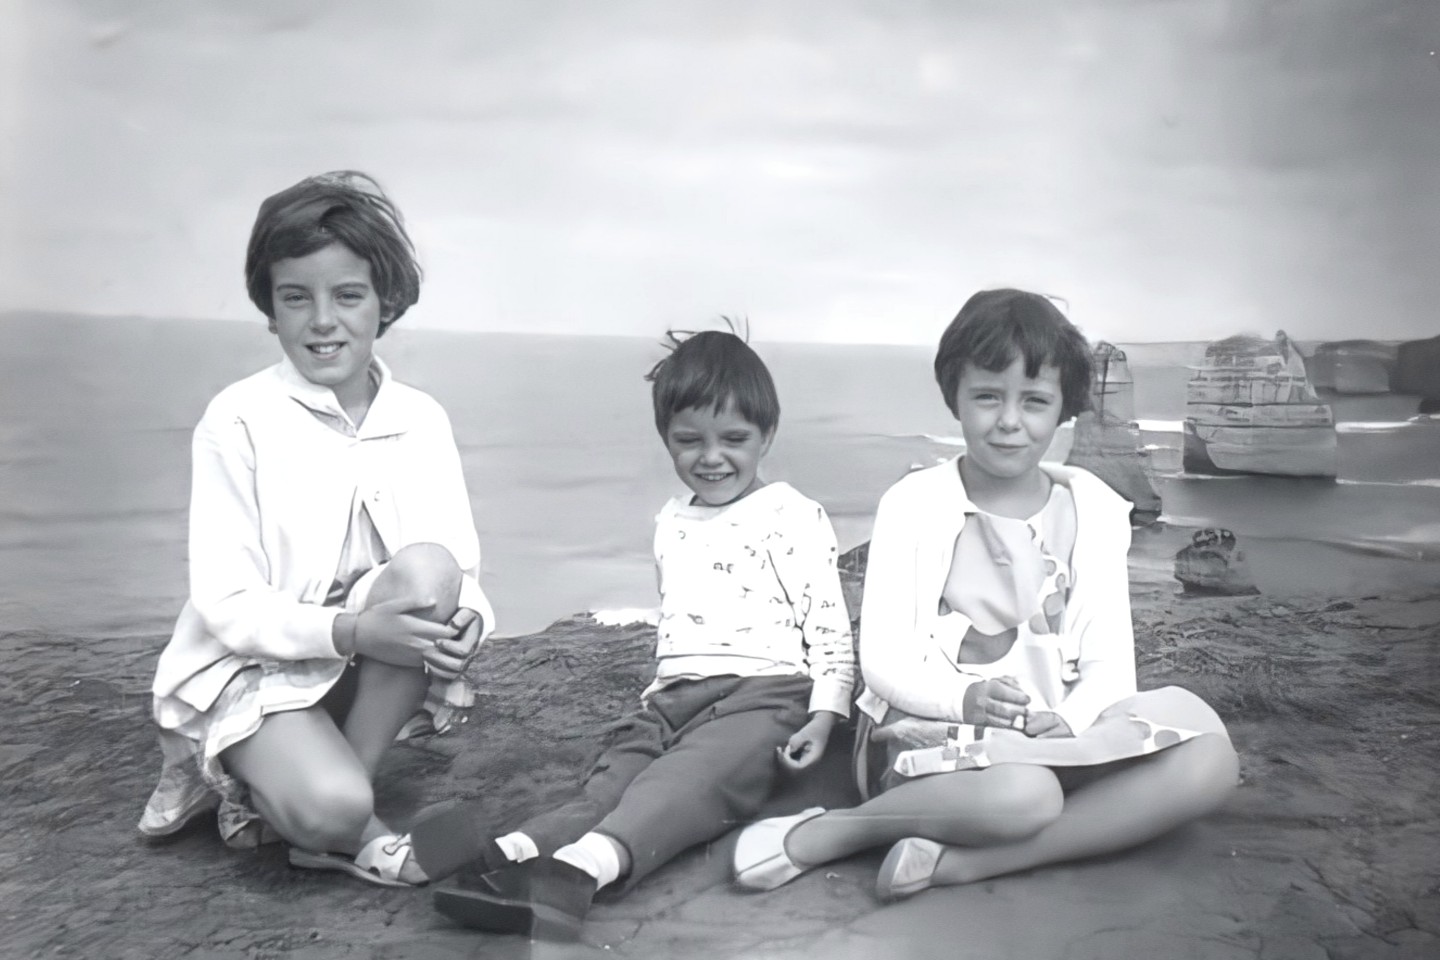 简，格兰特和阿娜·博蒙特（Amna Beaumont）于1965年在澳大利亚维多利亚坎贝尔港附近的十二使徒岩家庭旅行中拍摄。